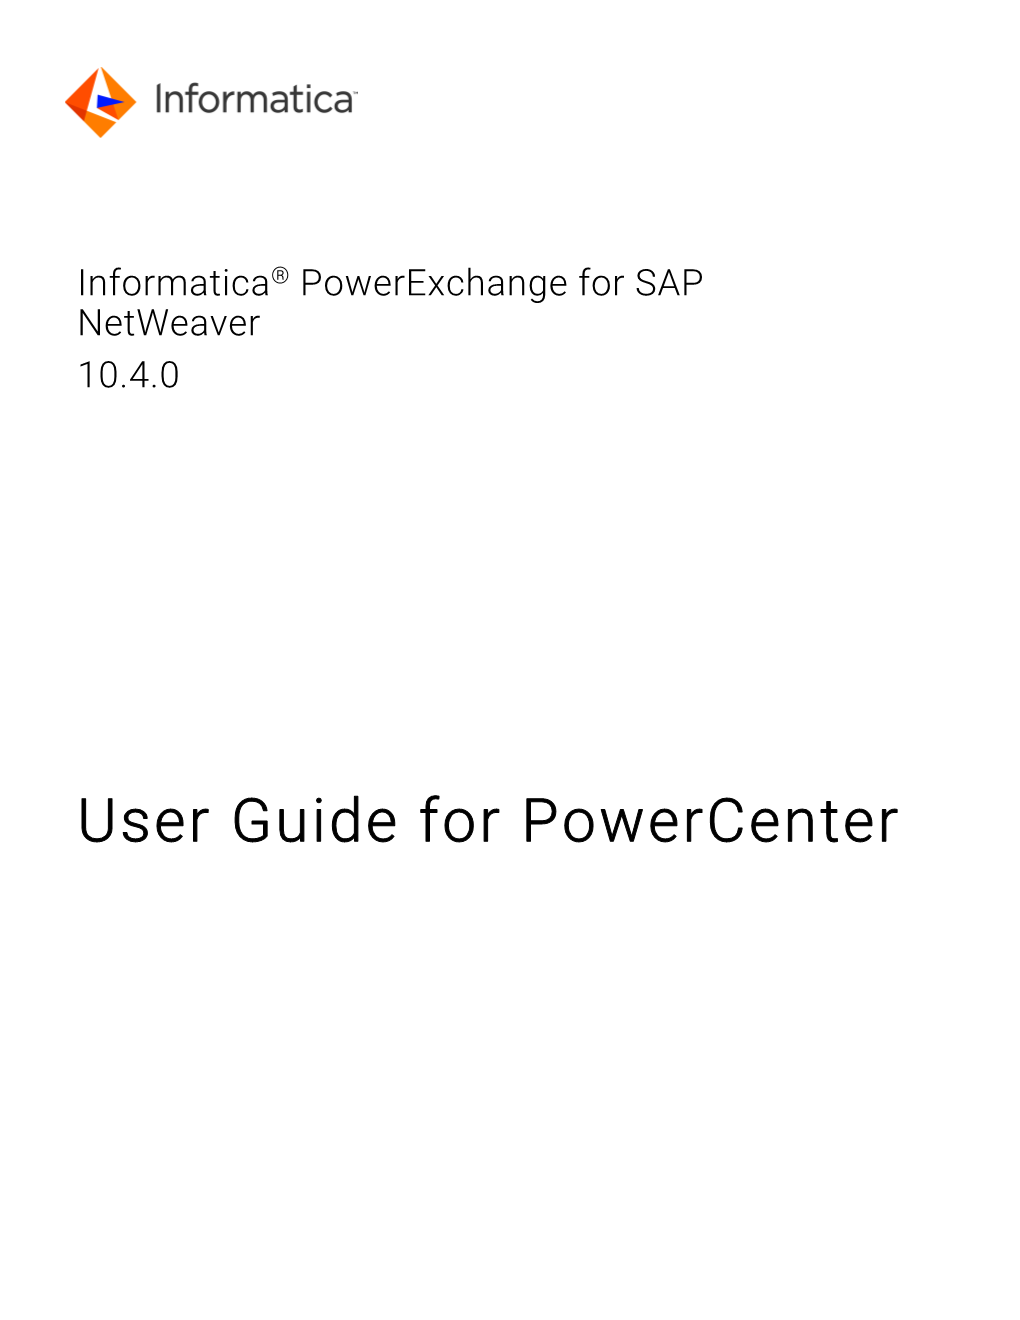 Informatica Powerexchange for SAP Netweaver